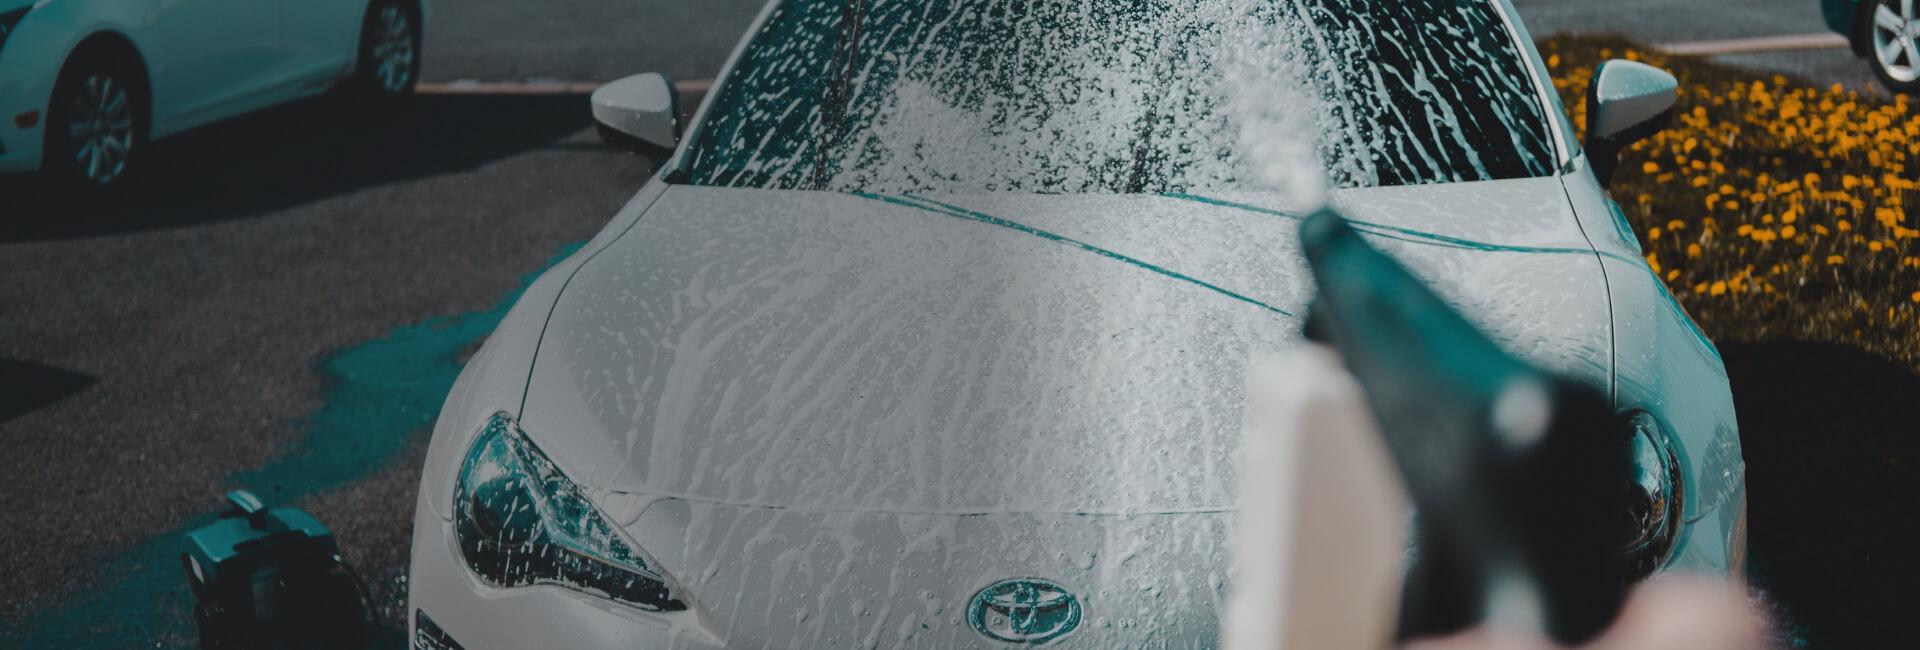 Mycie samochodu myjką ciśnieniową